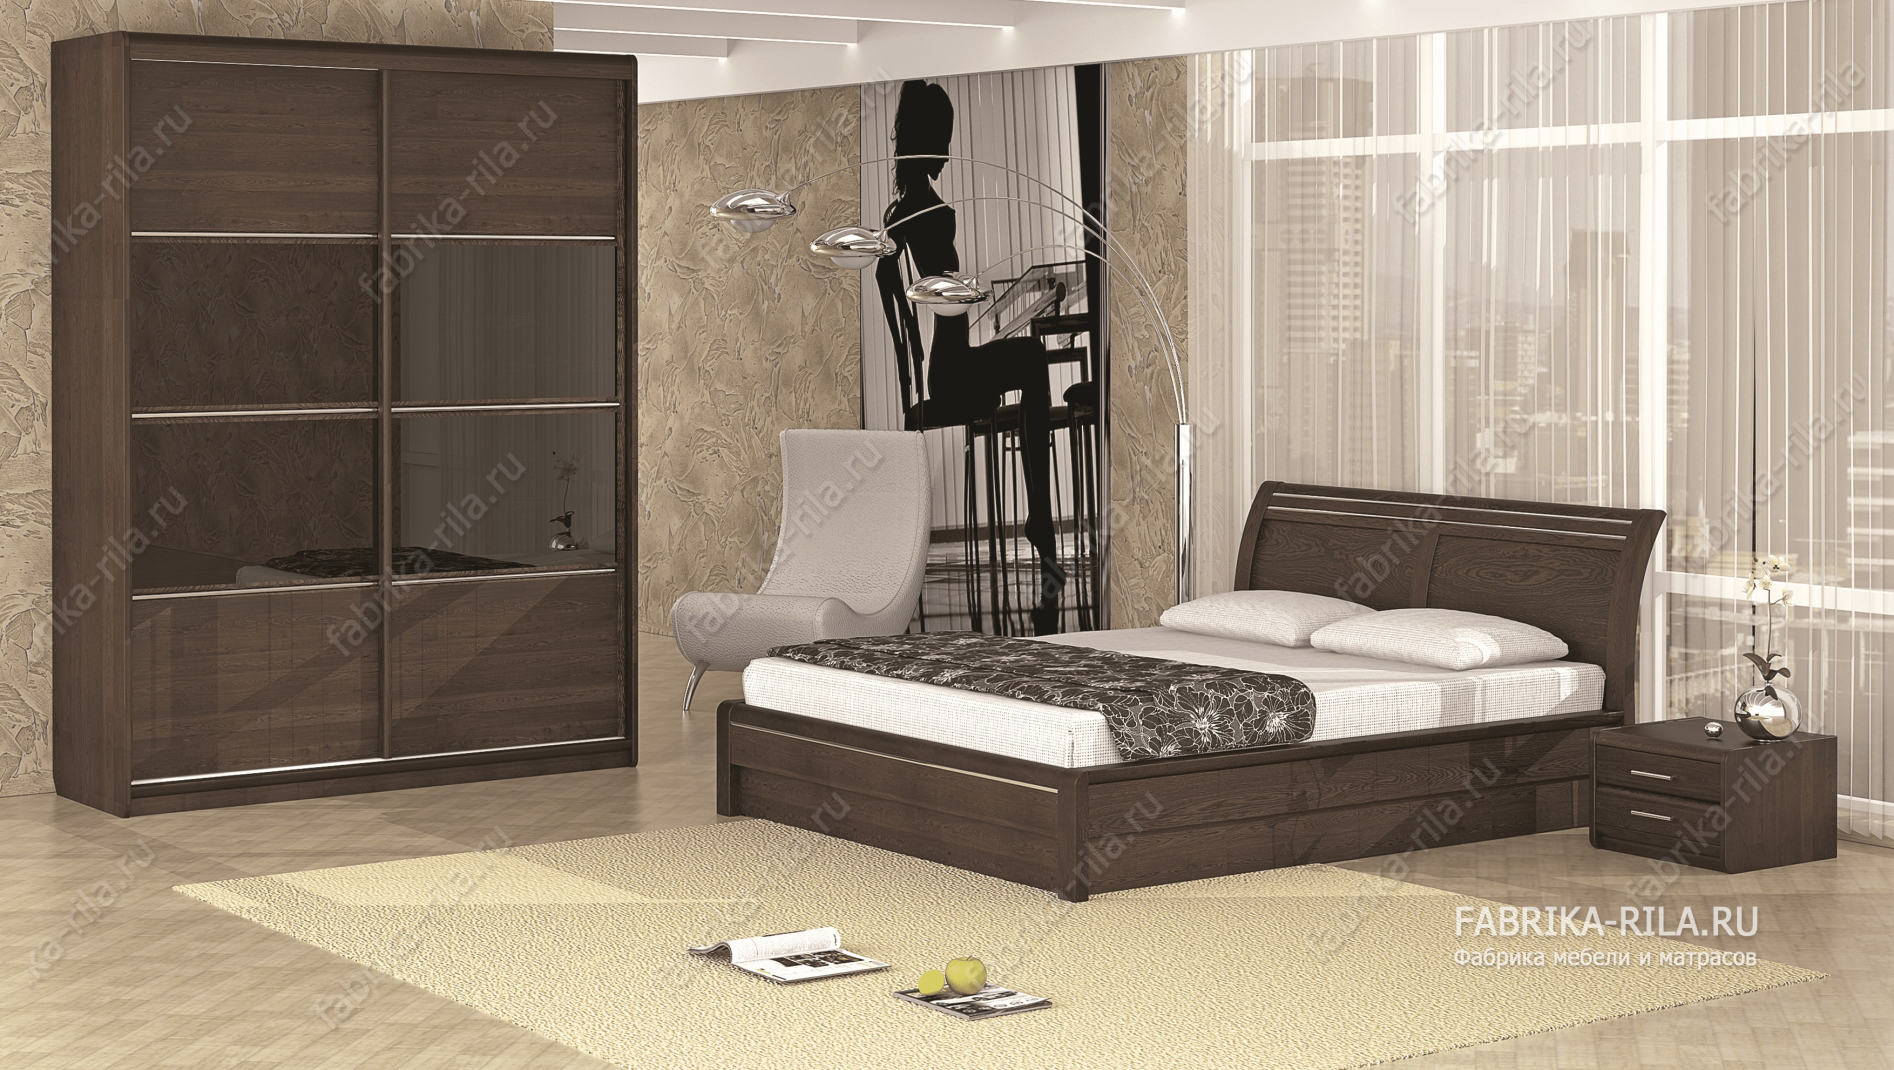 Кровать Okaeri 2 — 90x200 см. из сосны